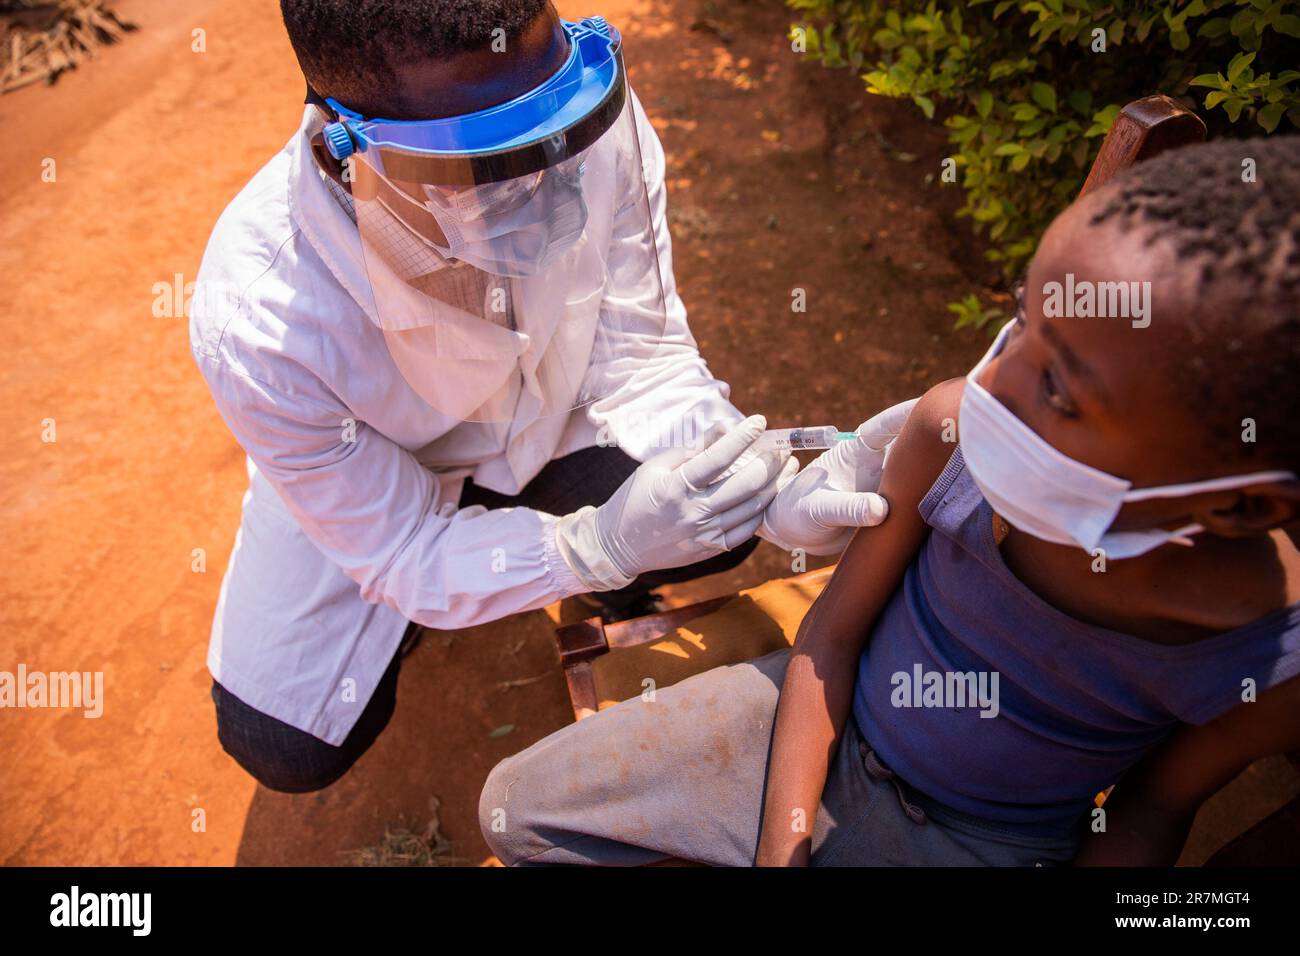 Un medico vaccina un bambino in Africa durante una visita medica Foto Stock